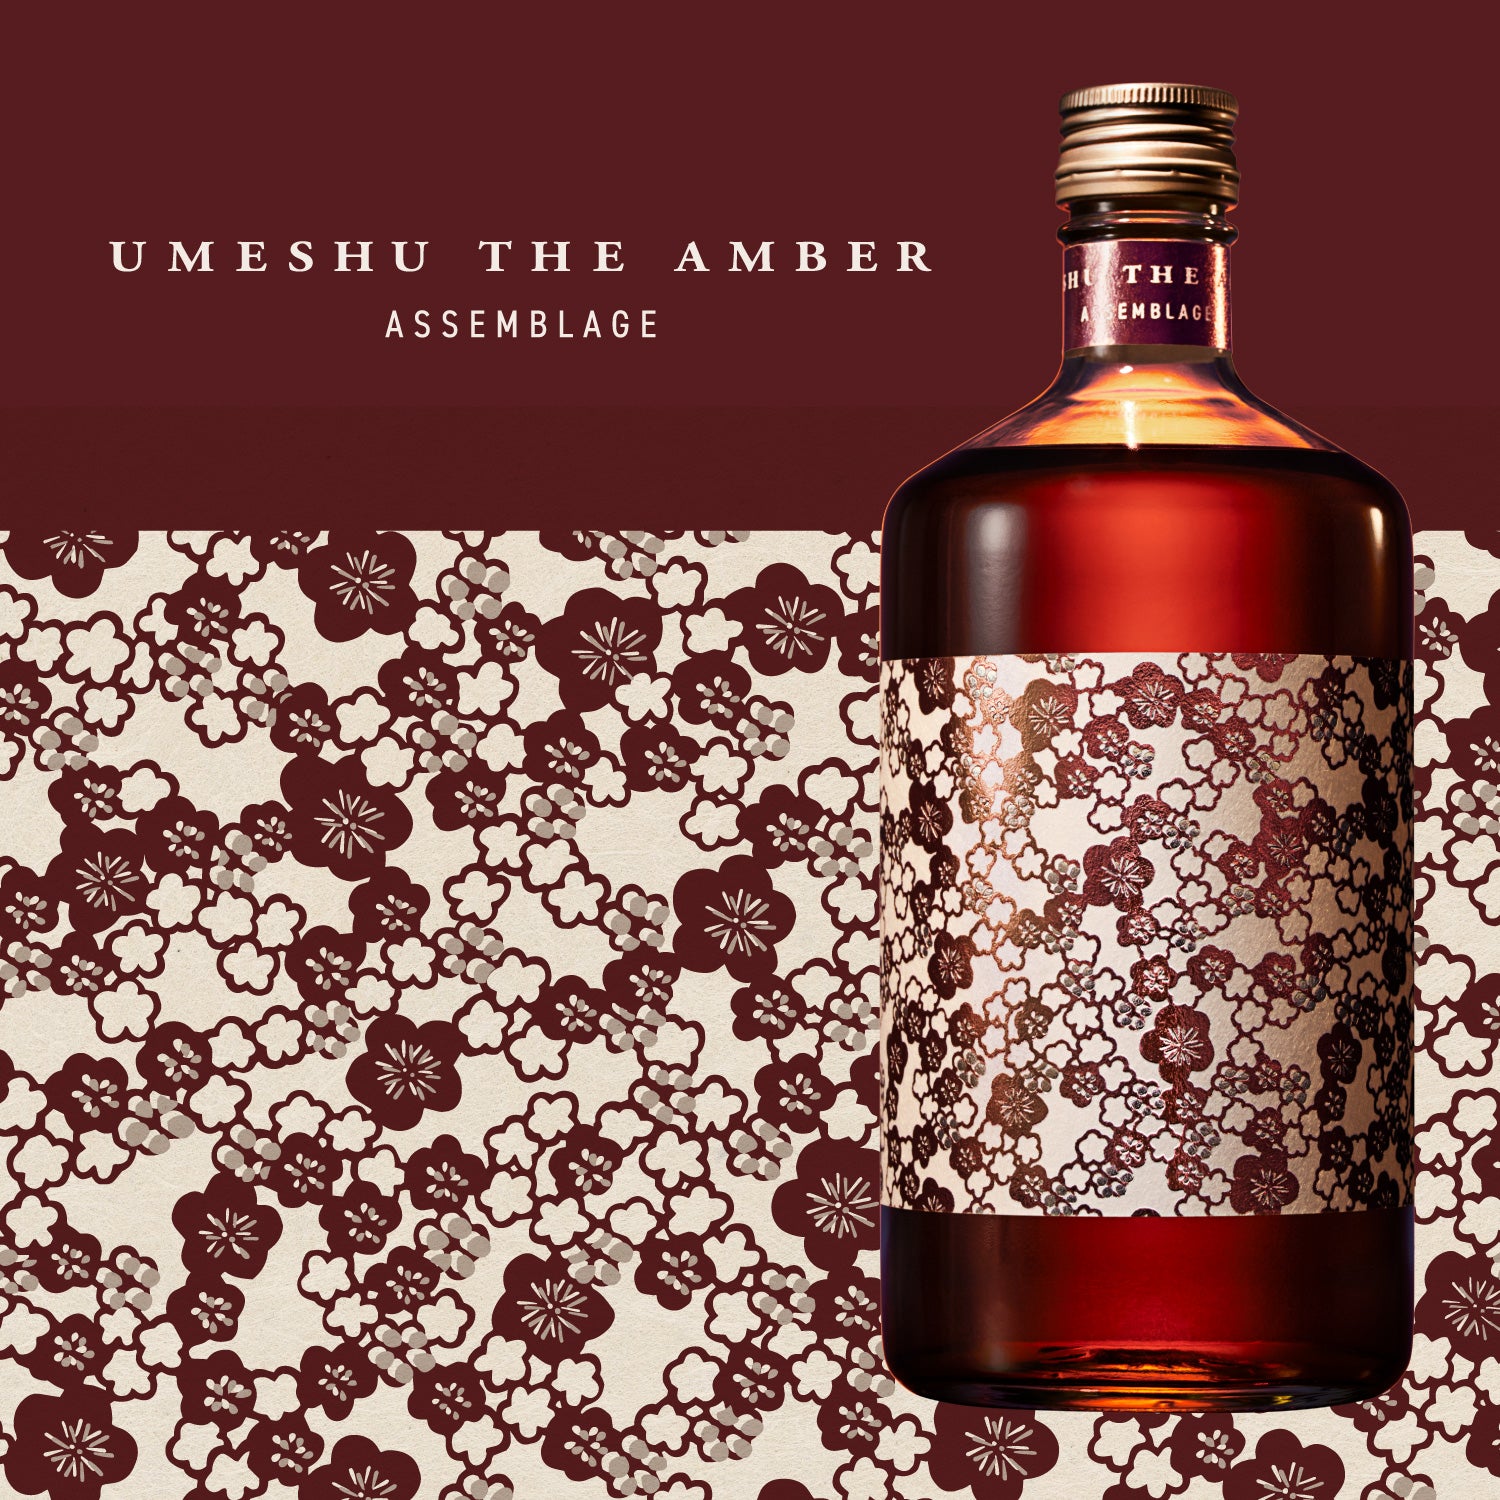 梅酒　UMESHU THE AMBER SOLERA